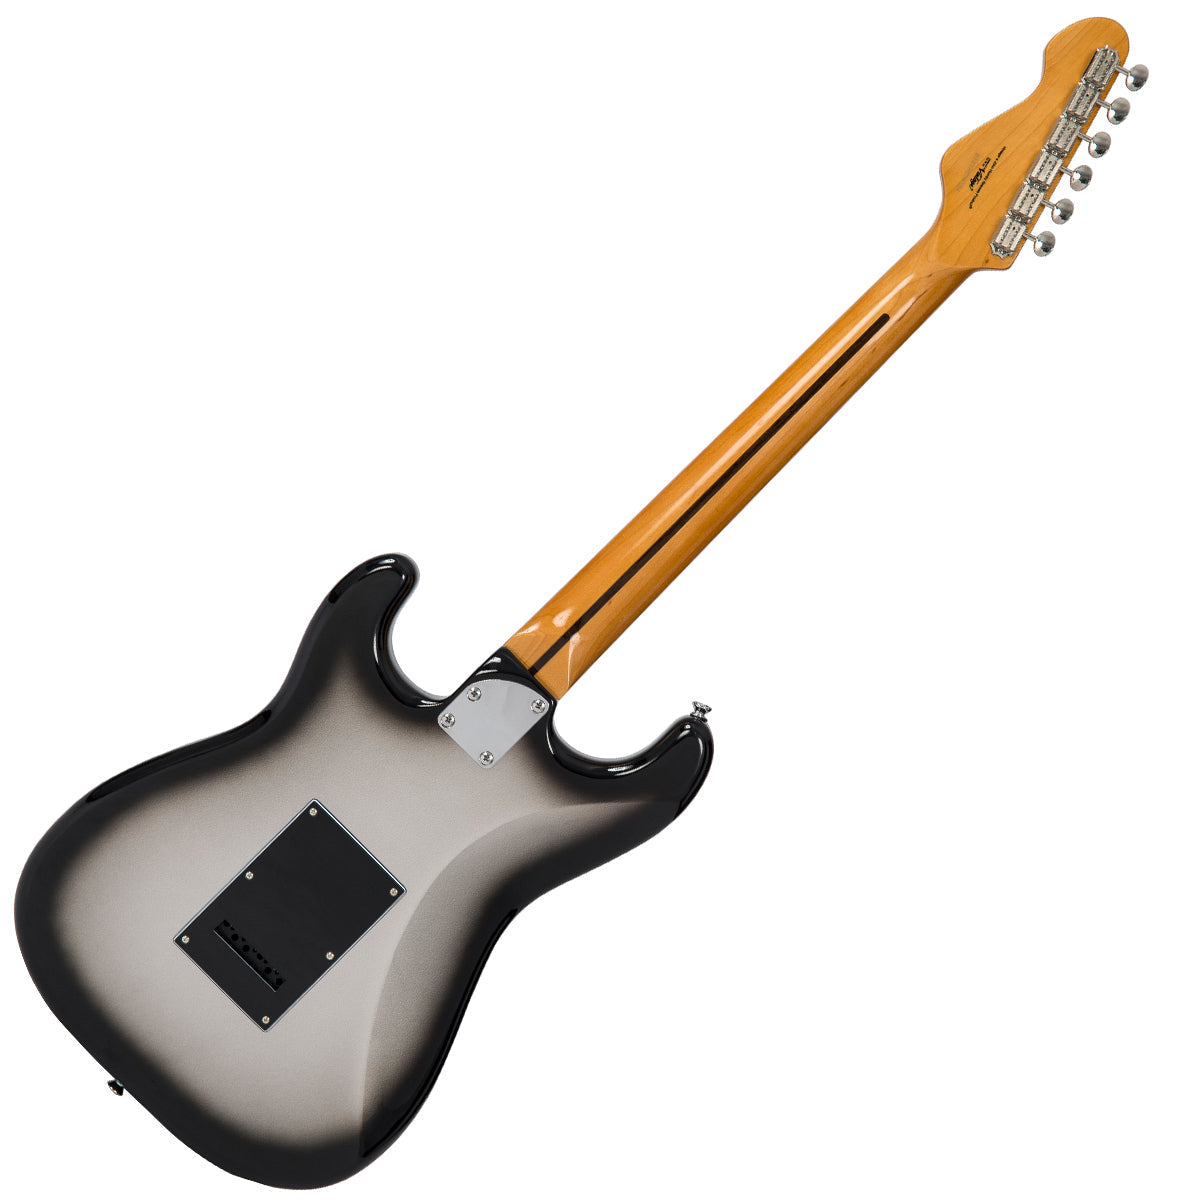 Vintage V6 ReIssued Electric Guitar ~ Silverburst, Electric Guitar for sale at Richards Guitars.